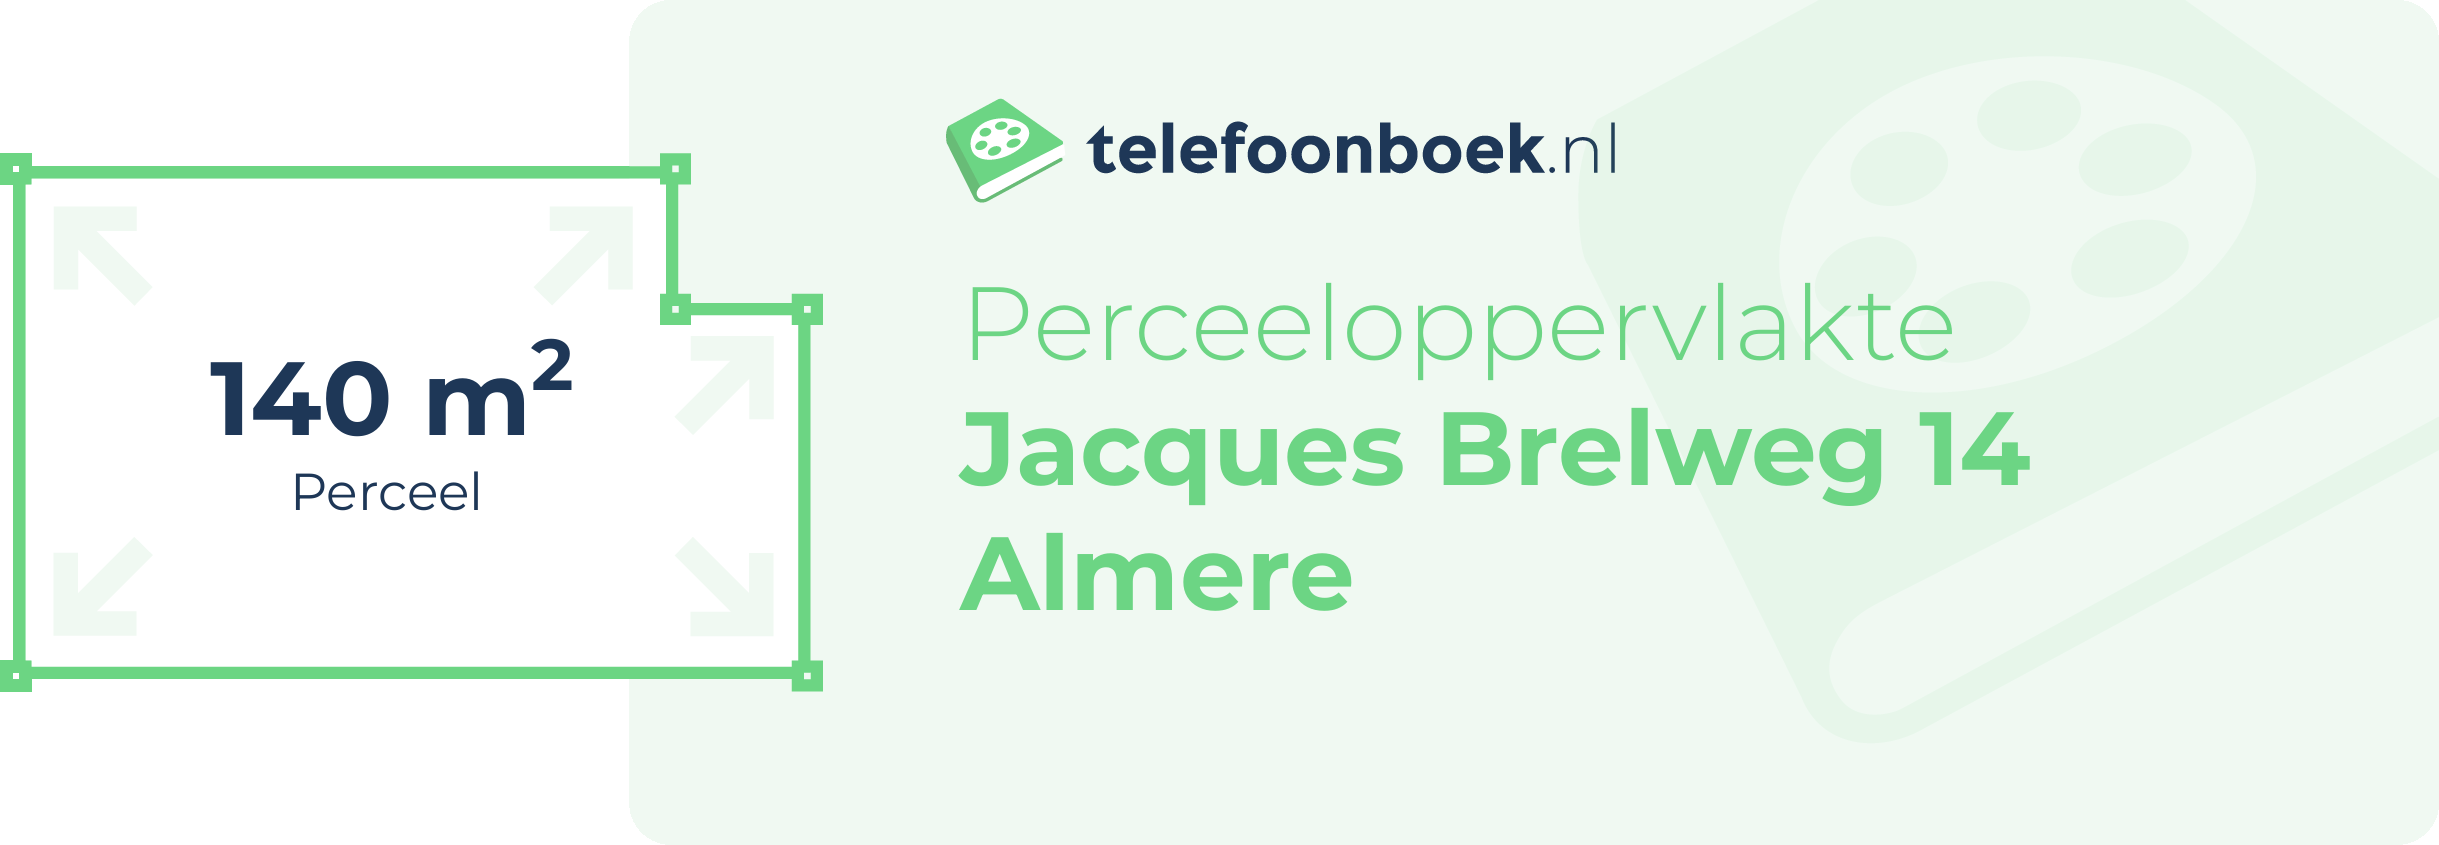 Perceeloppervlakte Jacques Brelweg 14 Almere